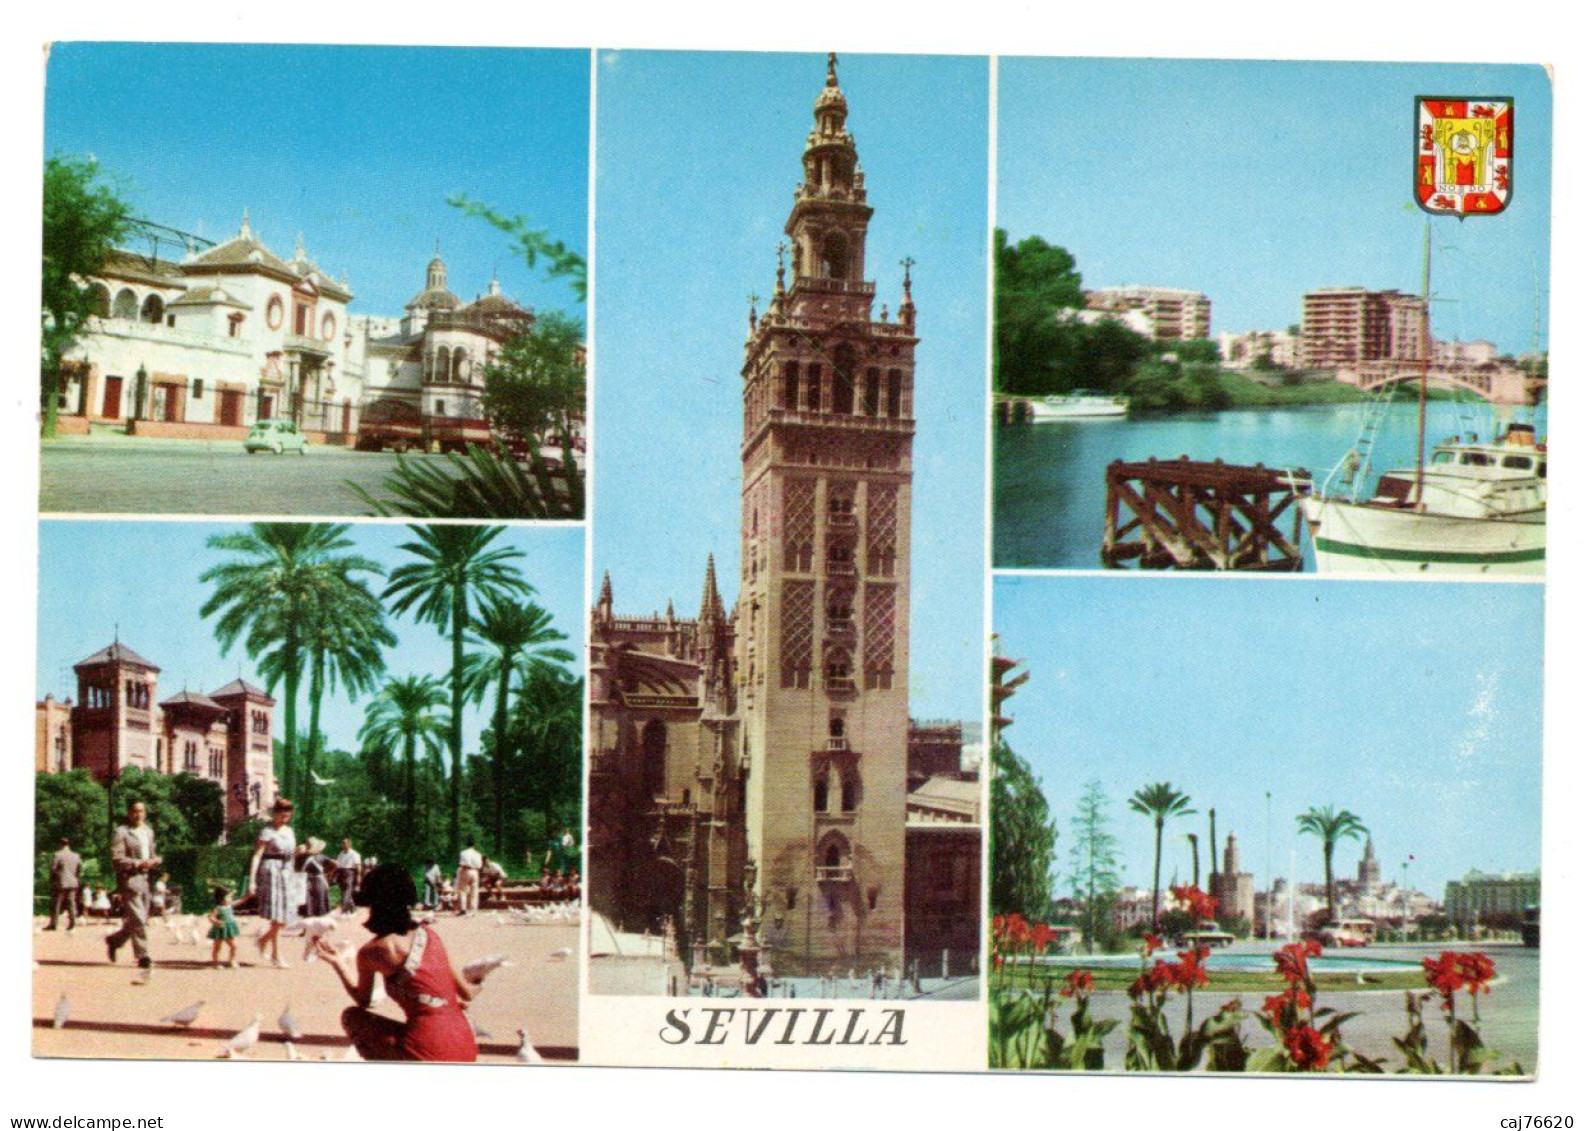 Sevilla - Sevilla (Siviglia)